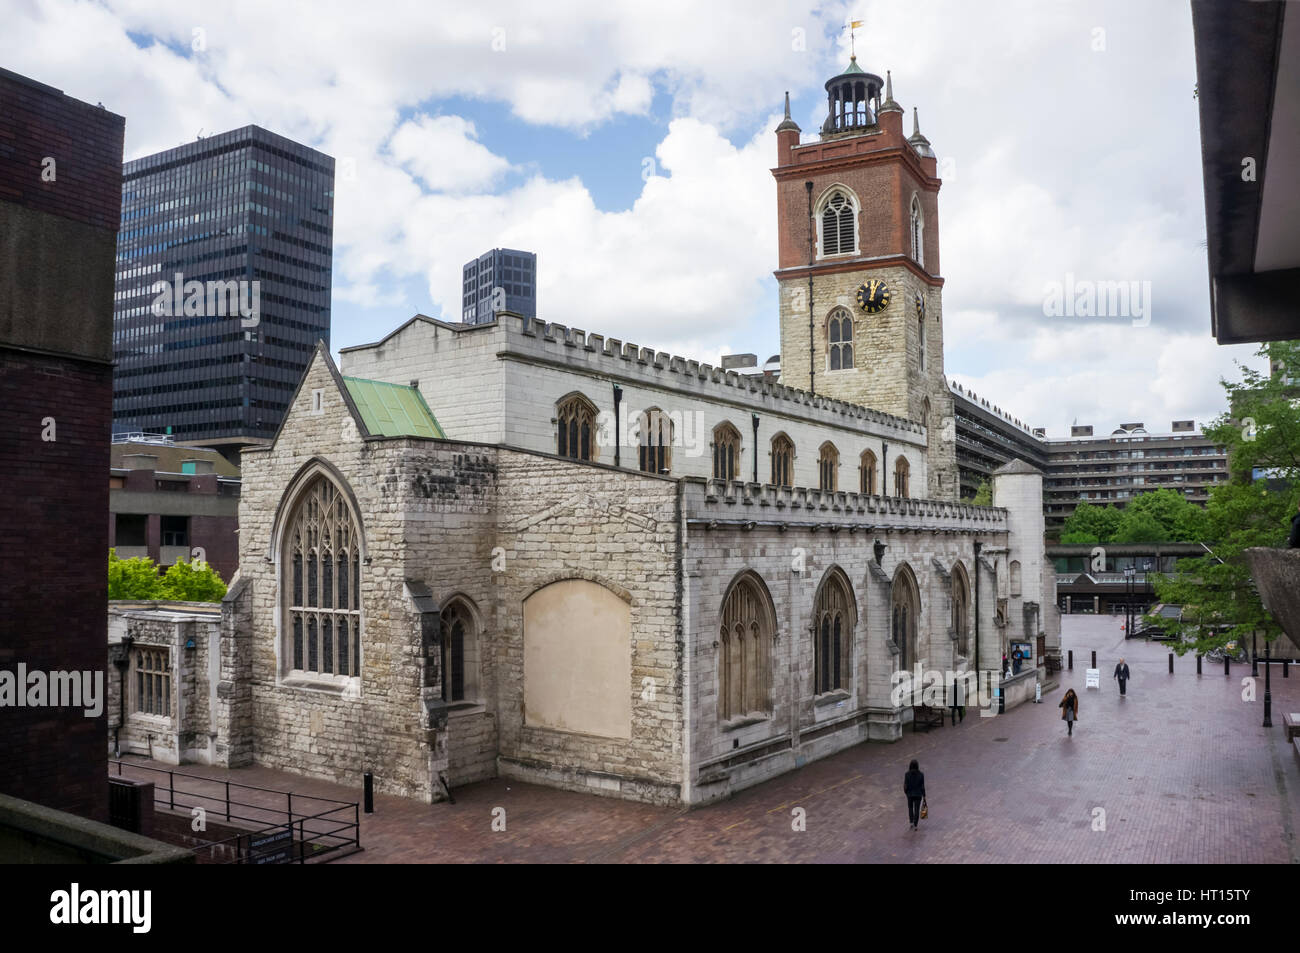 St Giles Cripplegate Perpendicular es una iglesia gótica en la ciudad de Londres en el Barbican estate. Fue construido en la Edad Media y fue reconstruido después de la Segunda Guerra Mundial Foto de stock